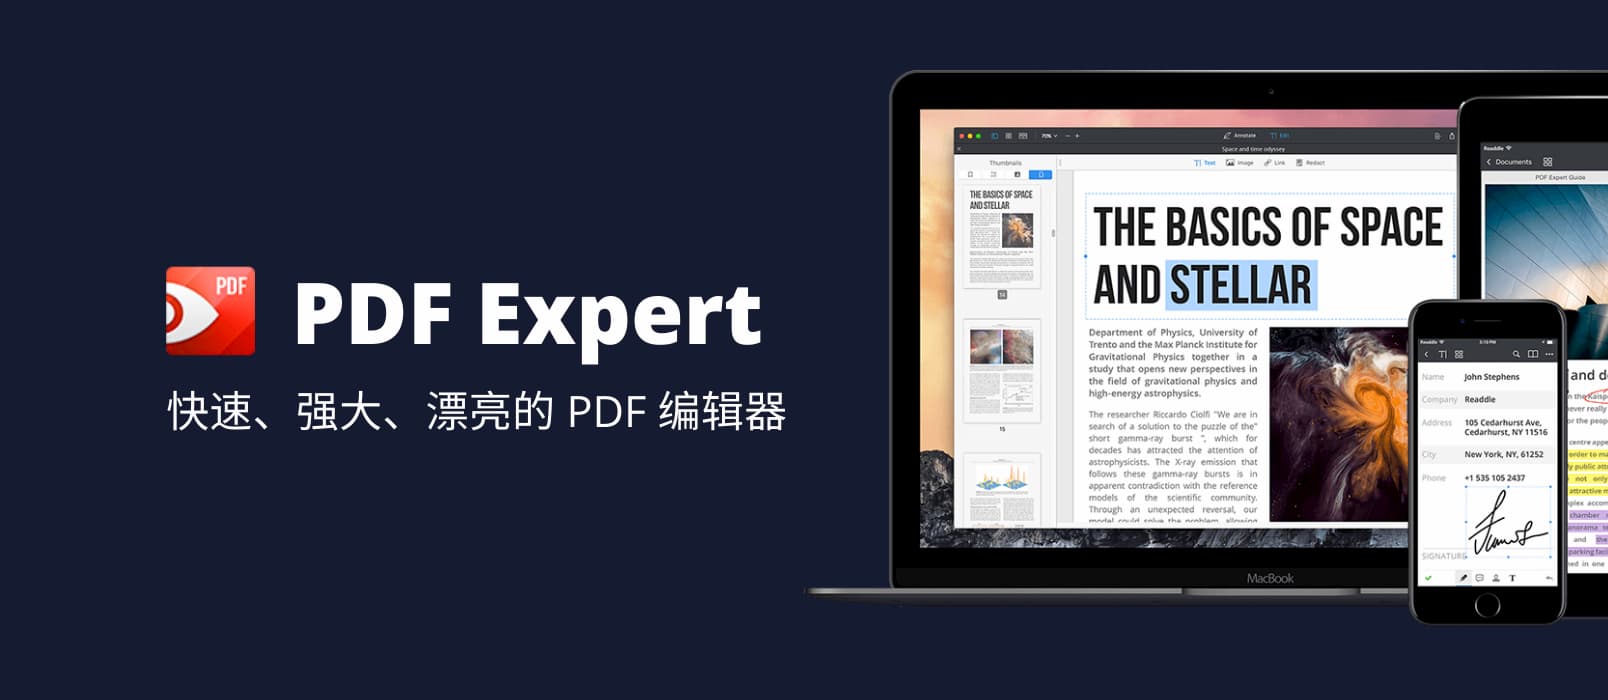 正版软件优惠，Mac 电脑下的全功能 PDF 工具：PDF Expert 1